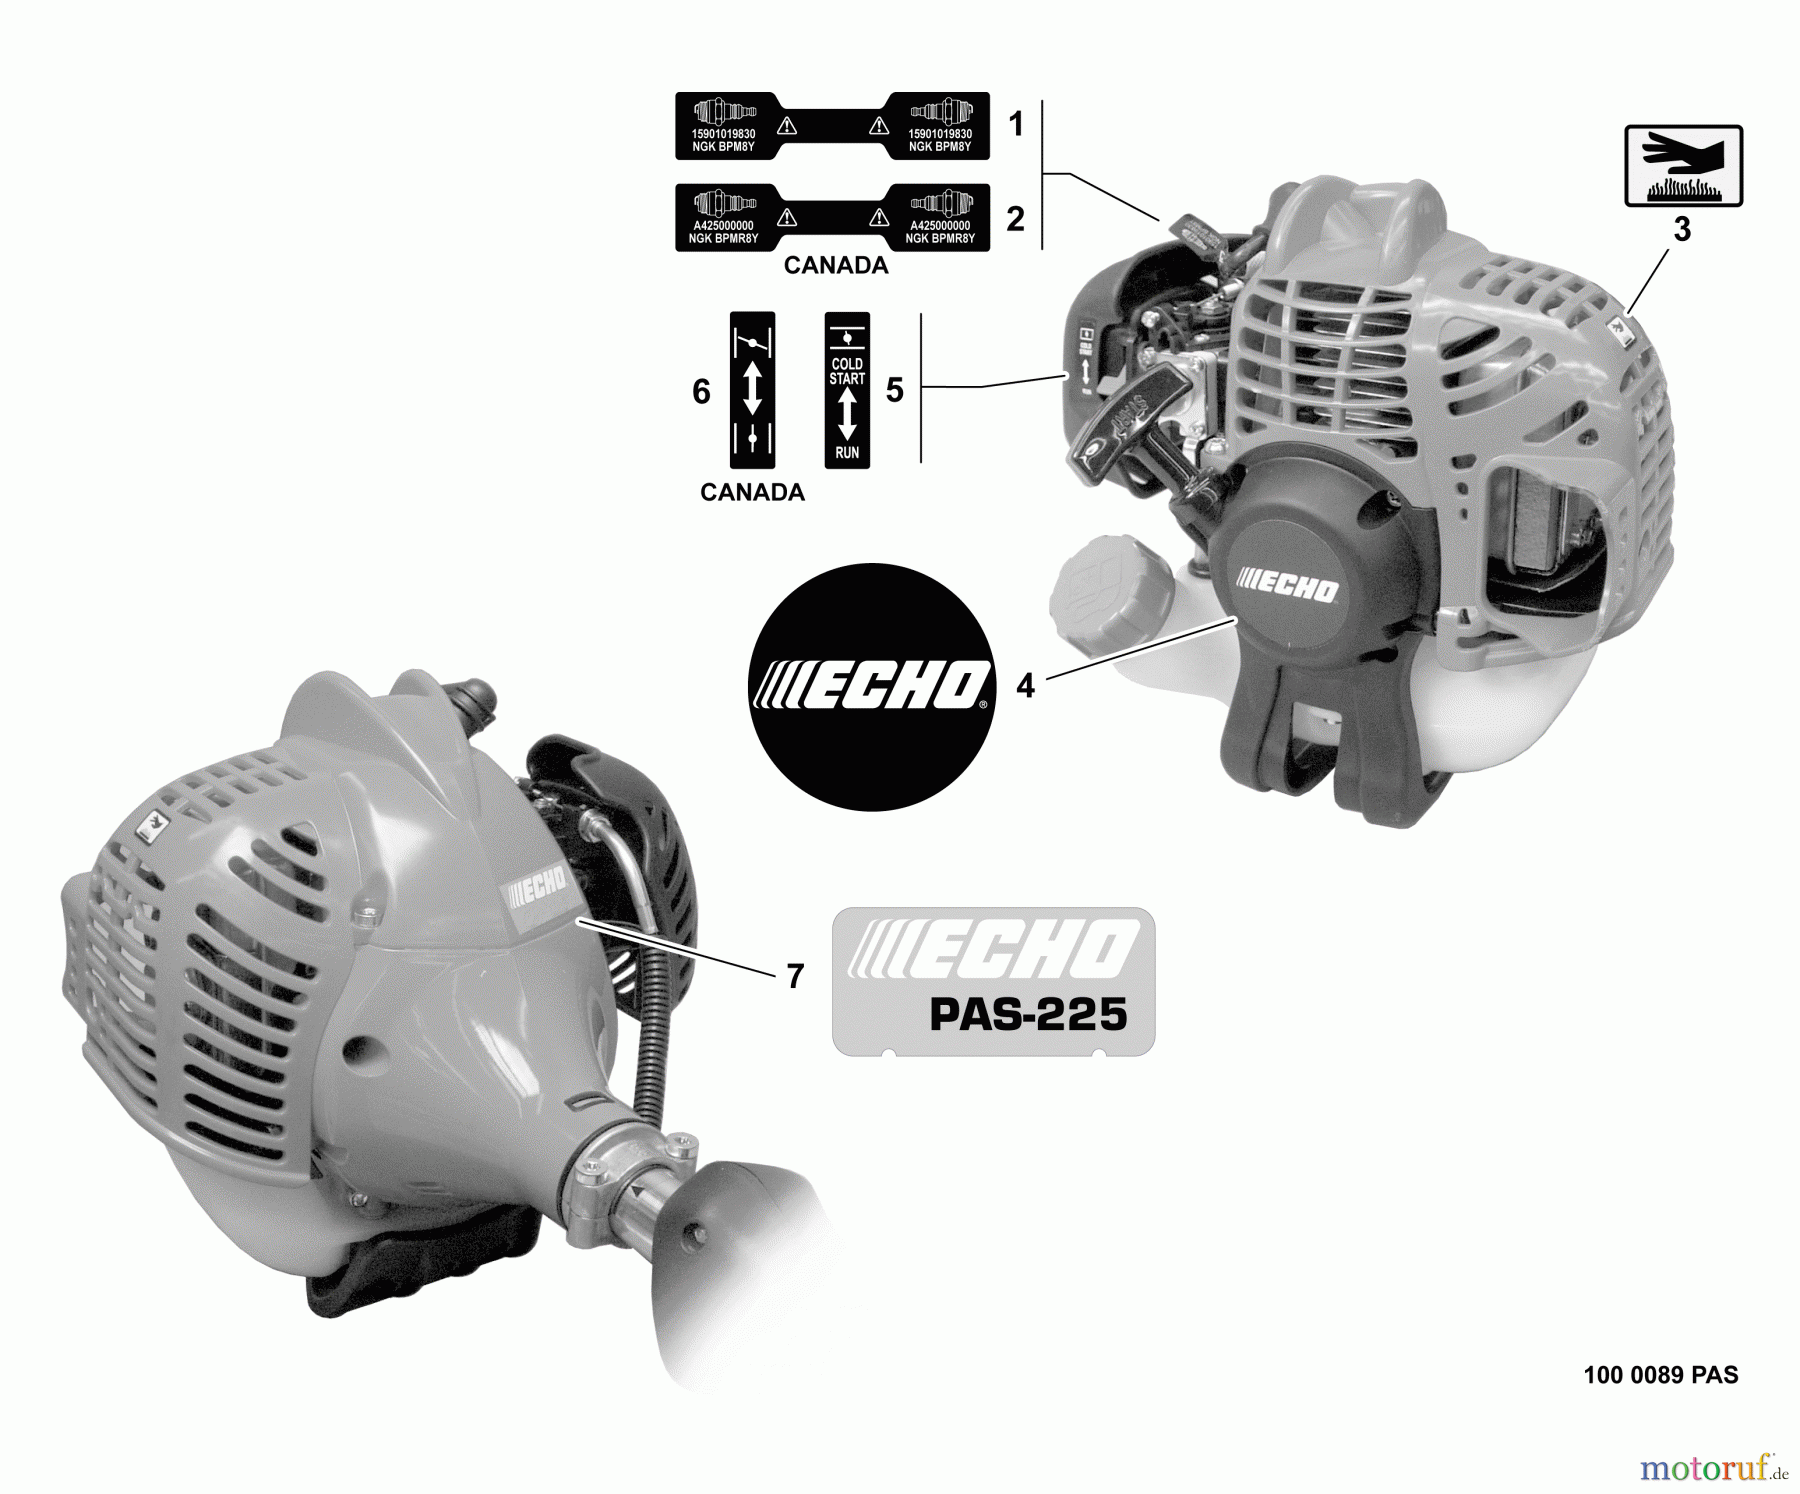  Echo Trimmer, Faden / Bürste PAS-225 - Echo Power Unit,  Labels